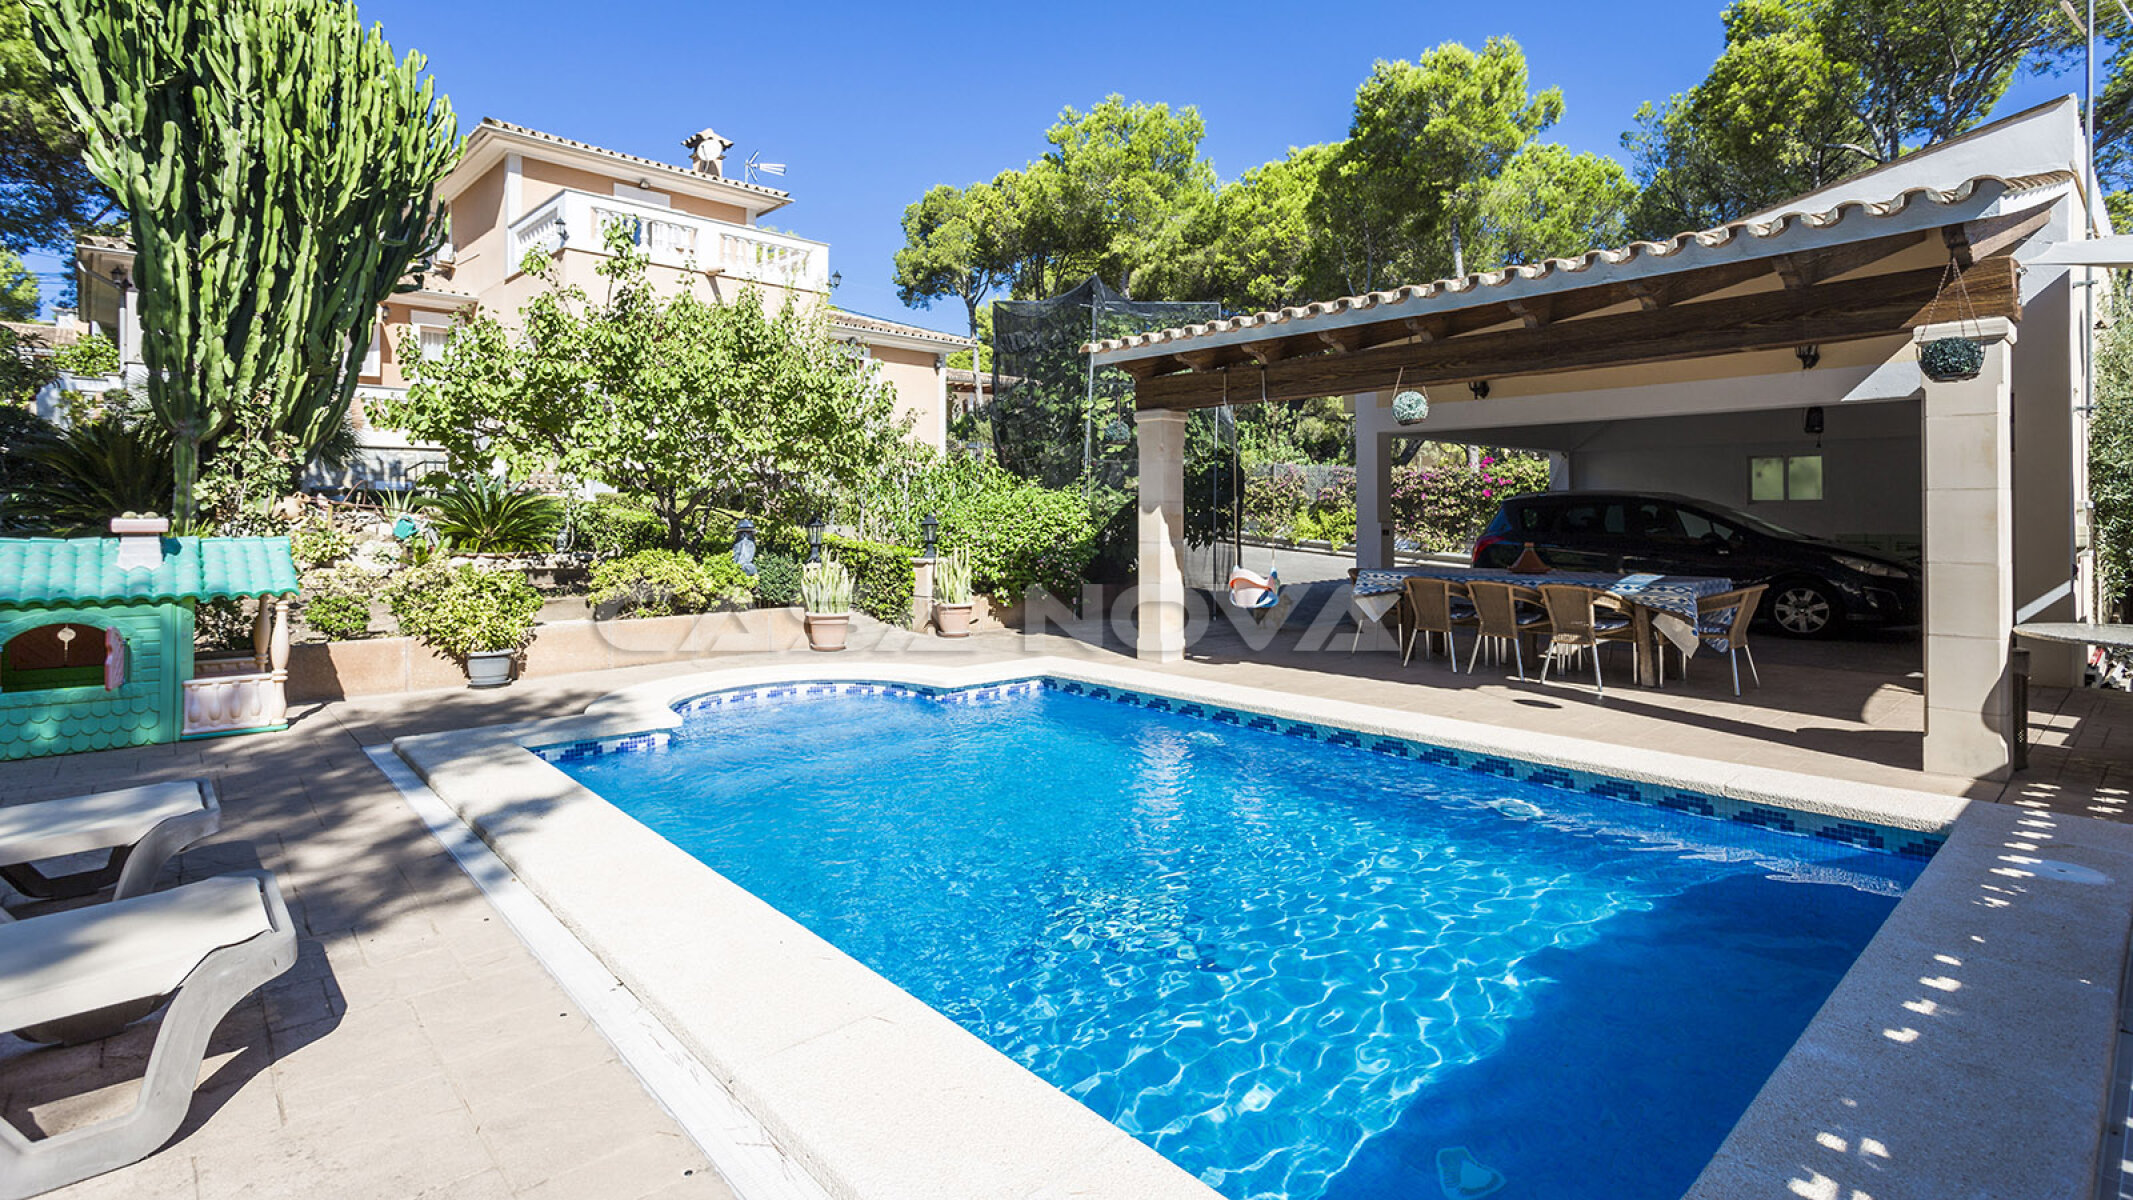 Mediterrane Villa Mallorca mit Pool in ruhiger Wohnlage